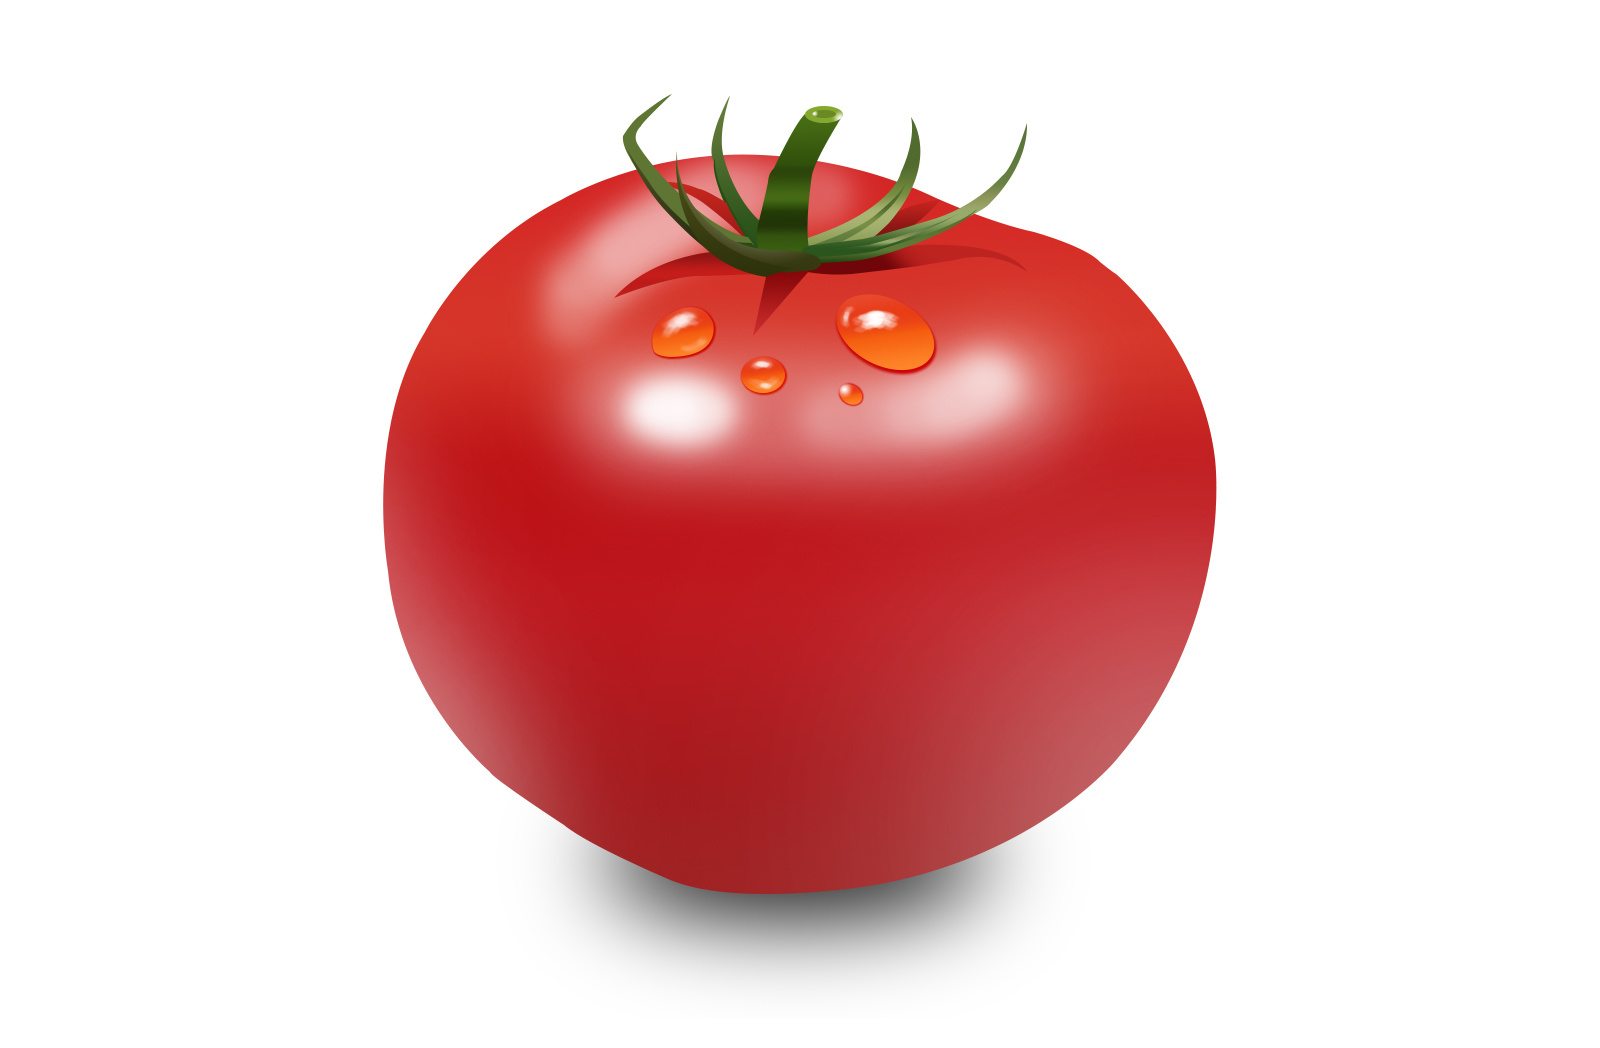 搞笑 番茄 红色 蔬菜 新鲜图片免费下载 - 觅知网